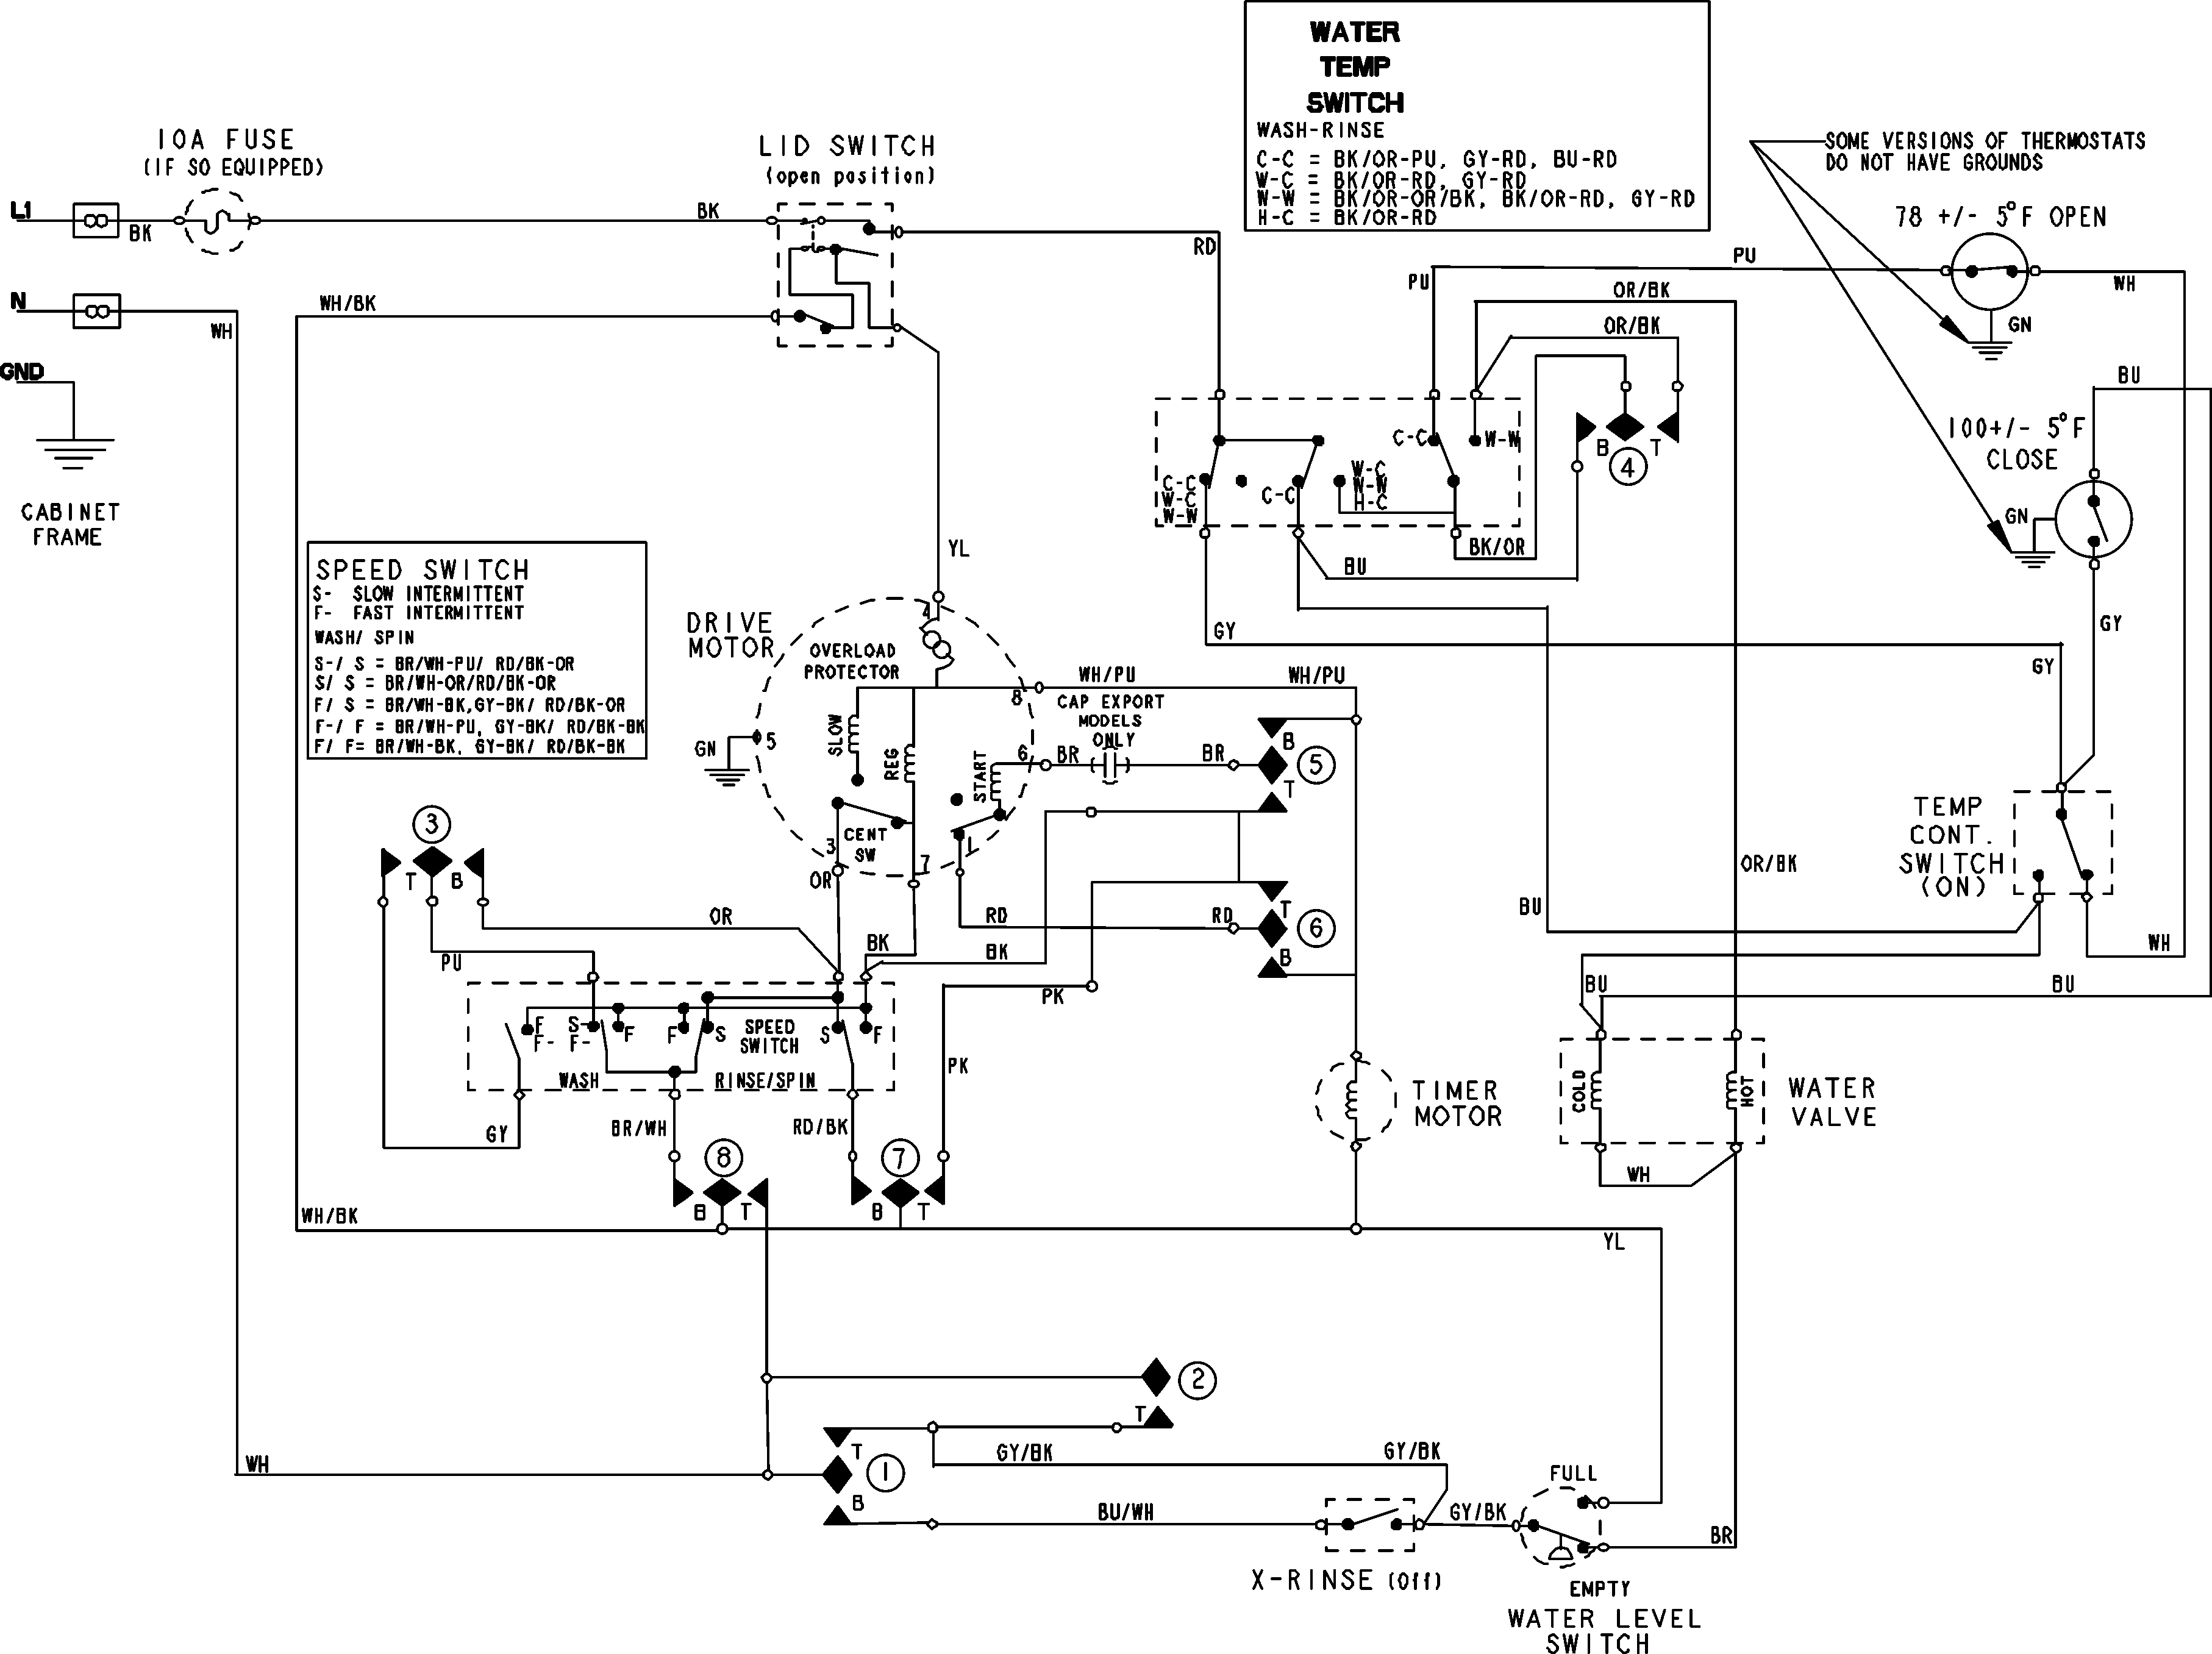 Ifb Washing Machine Motor Wiring Diagram